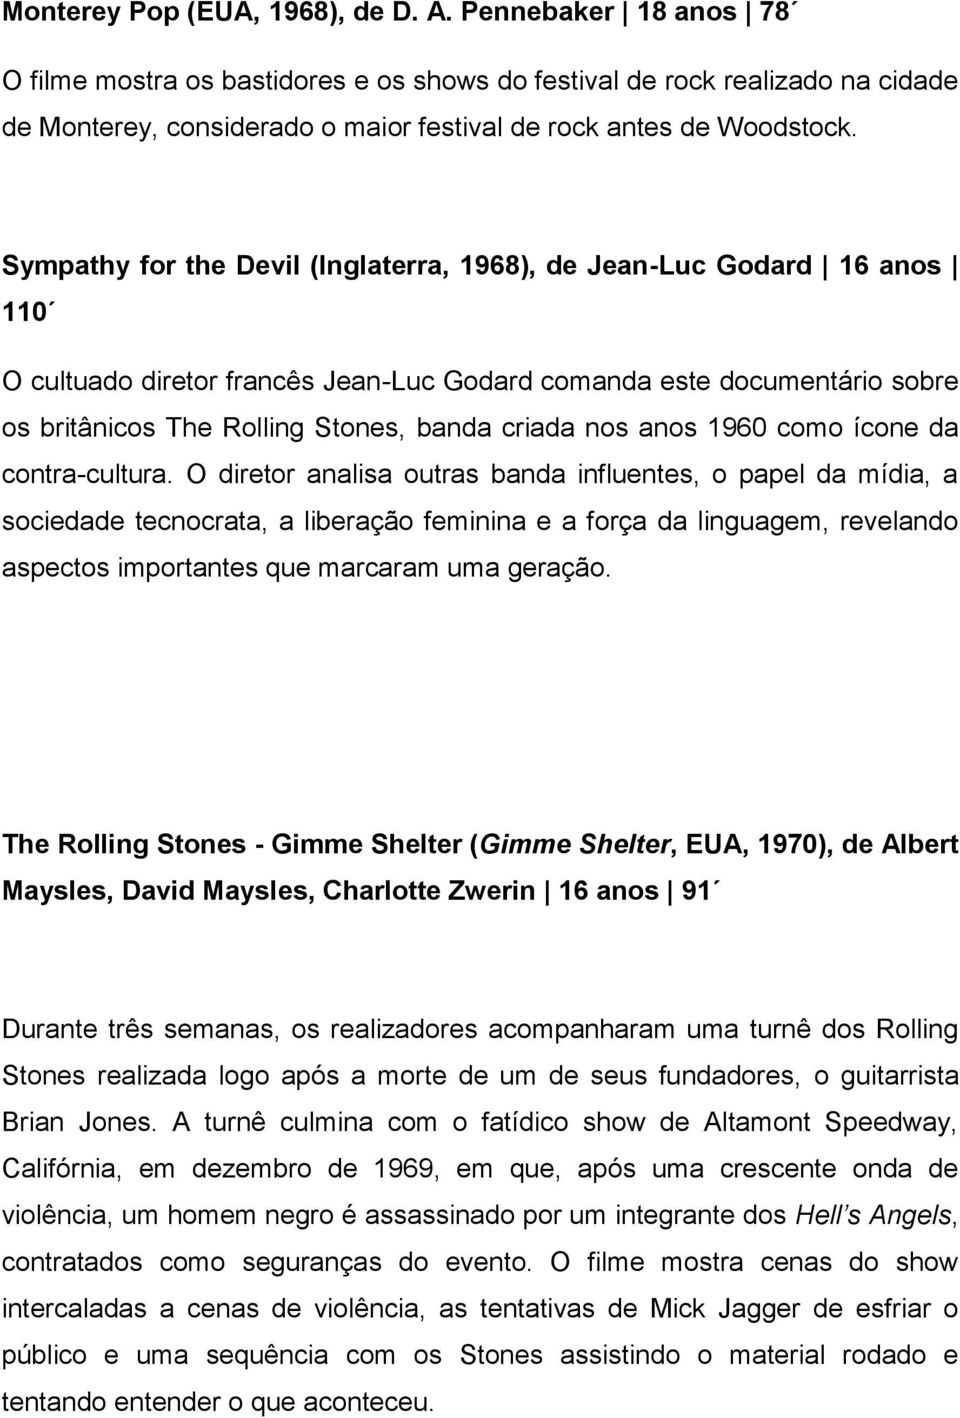 Sympathy for the Devil (Inglaterra, 1968), de Jean-Luc Godard 16 anos 110 O cultuado diretor francês Jean-Luc Godard comanda este documentário sobre os britânicos The Rolling Stones, banda criada nos